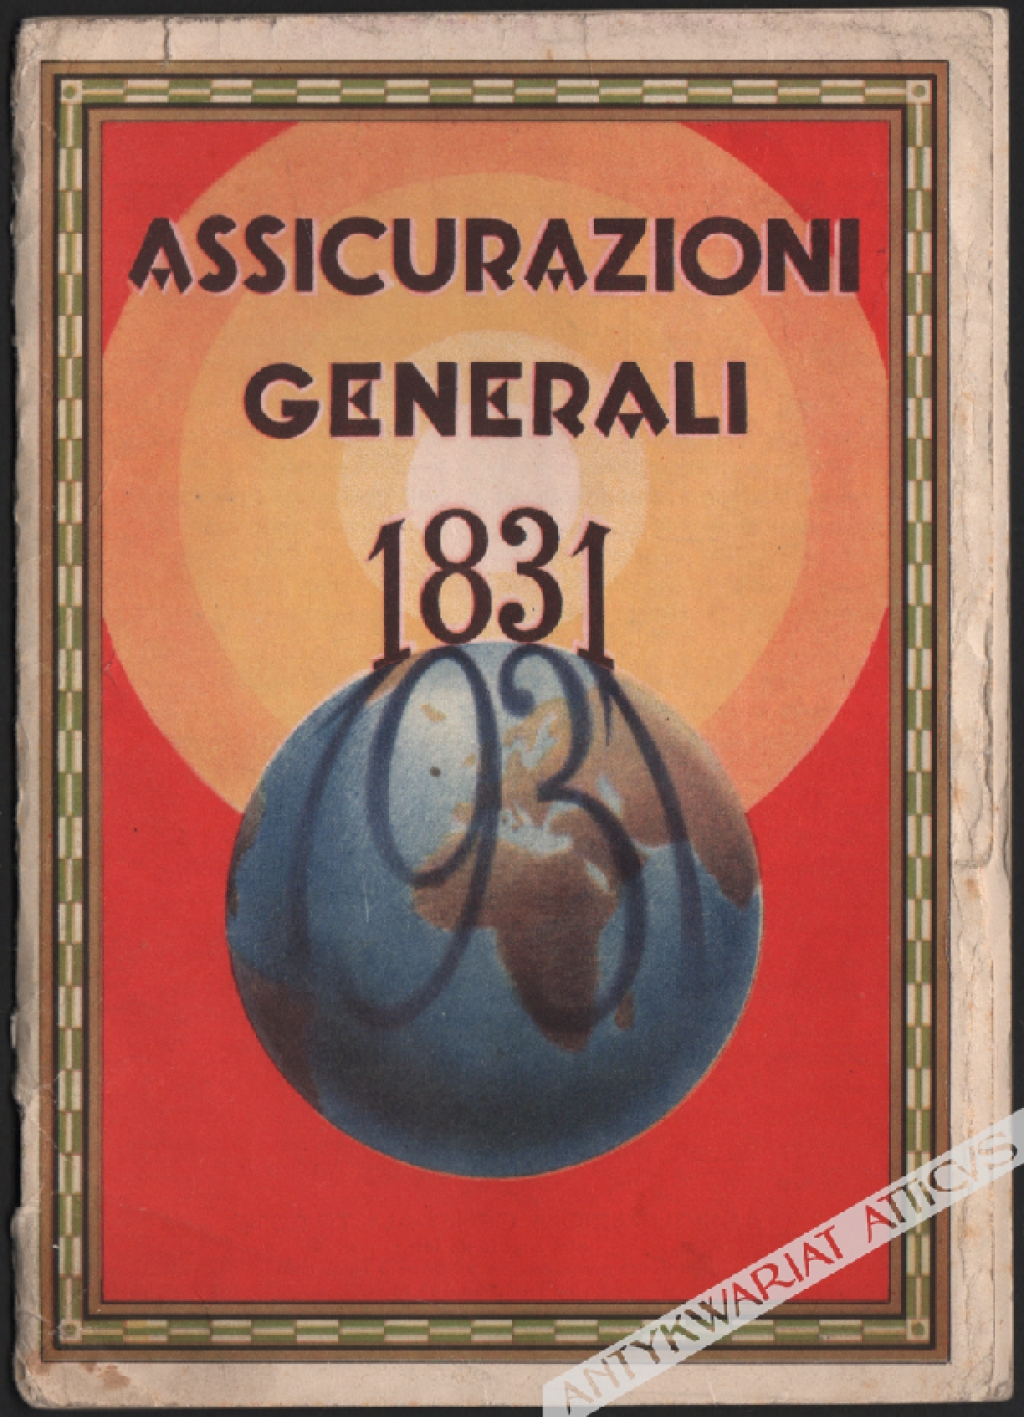 [druk reklamowy, ok. 1931] Assiccurazioni Generali 1831-1931